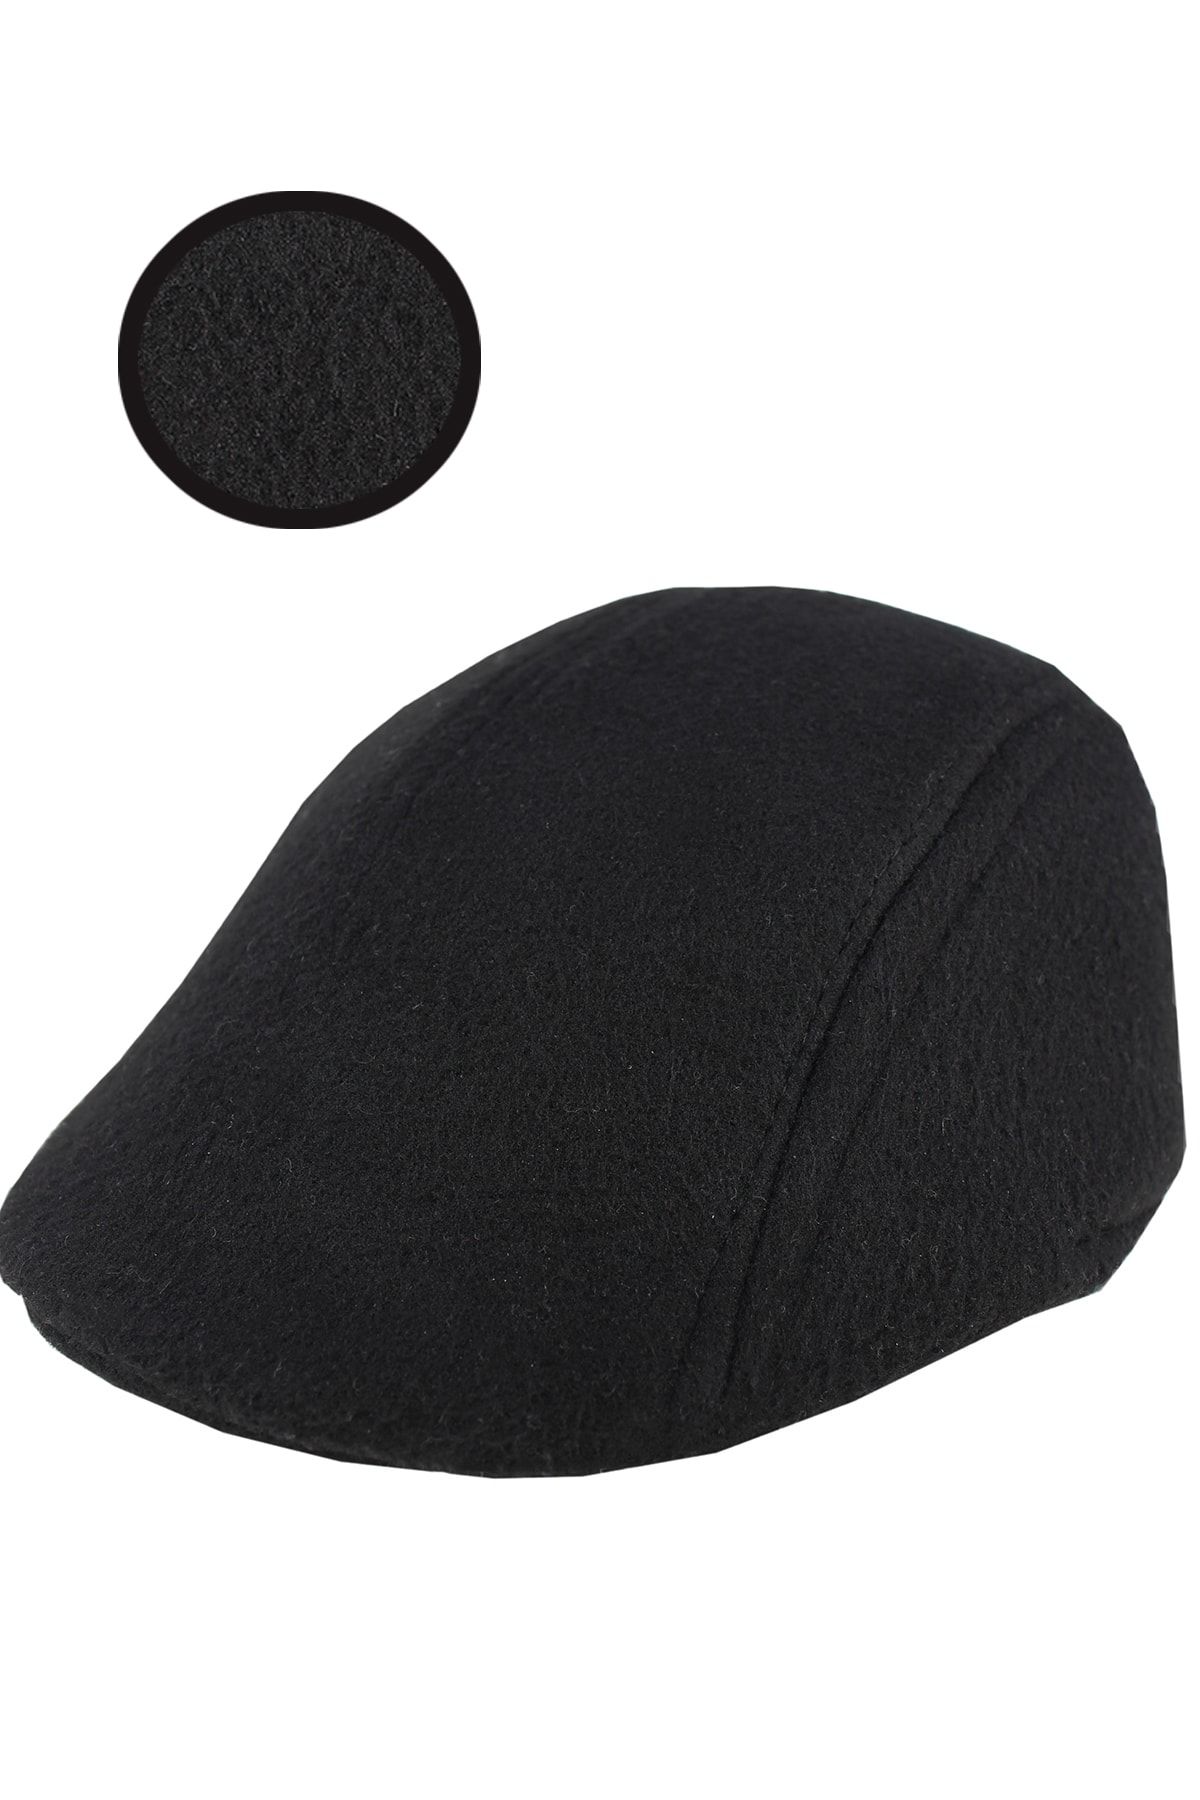 Varetta Erkek Kasket Kaşmir Yünlü Siyah Kışlık Kulaklı Şapka